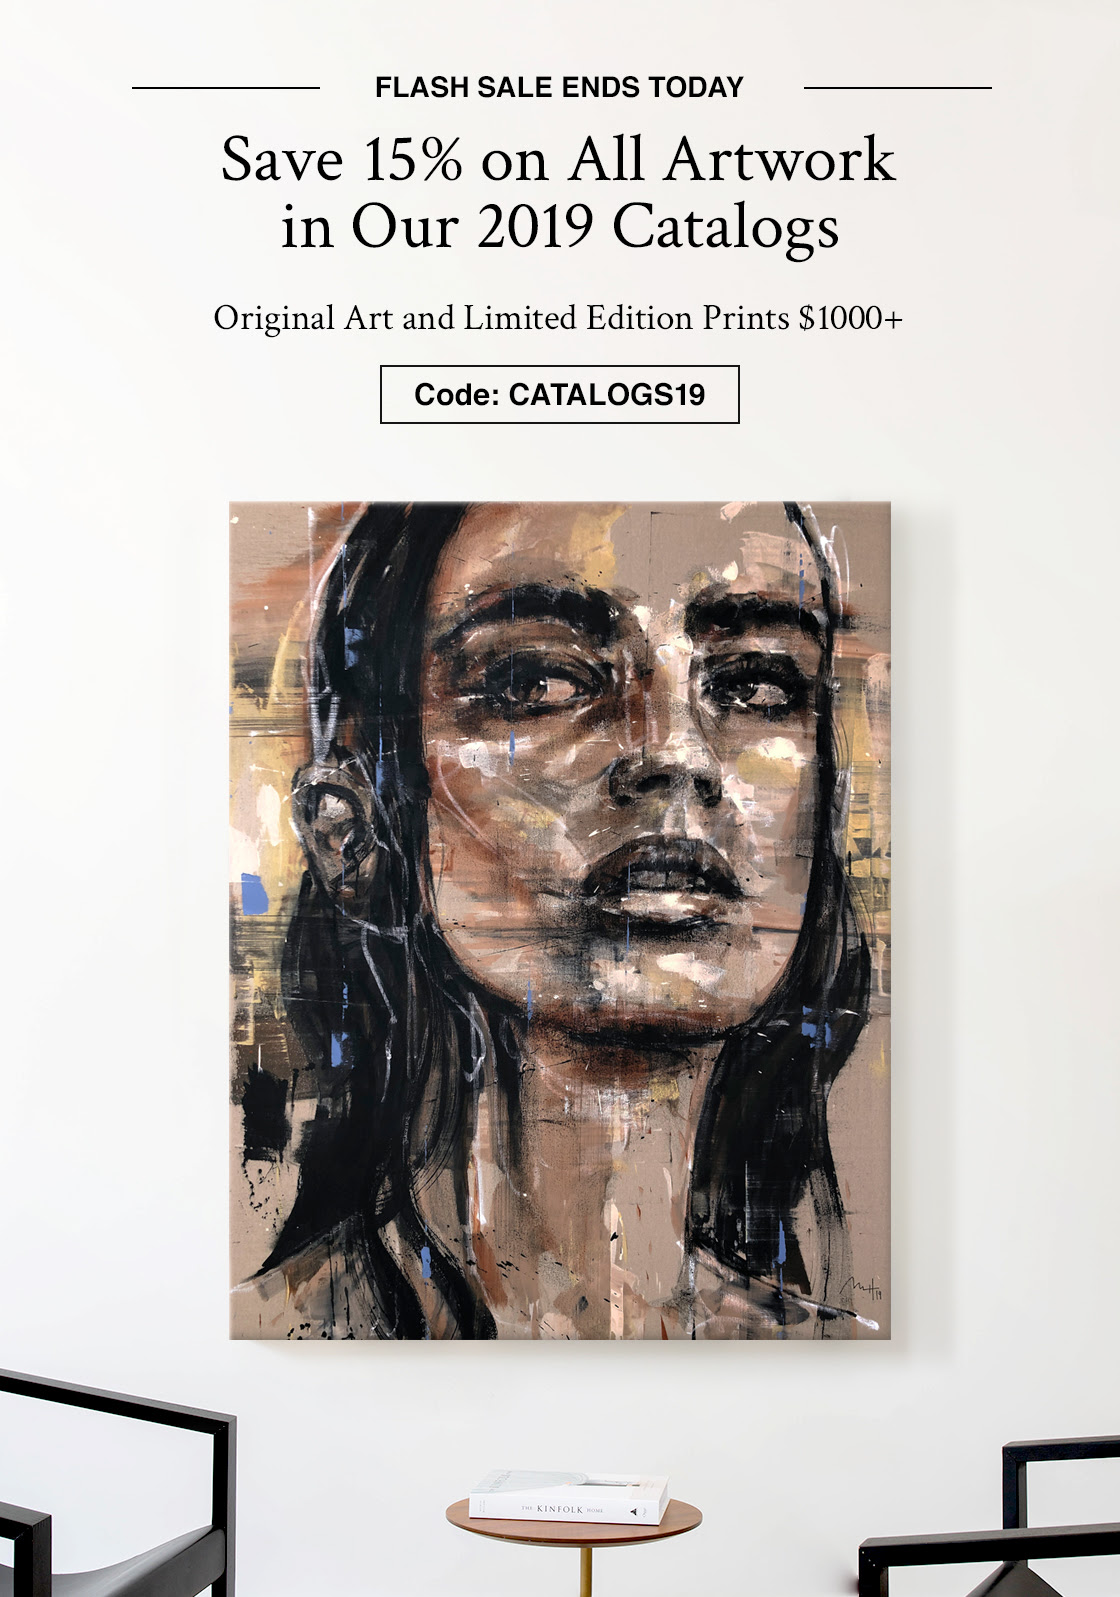 FLASH VENDA TERMINA AMANHÃ |  Economize 15% em todas as obras de arte em nossos catálogos de 2019 Arte original e edição limitada imprime $ 1000+ |  Código: CATÁLOGO19